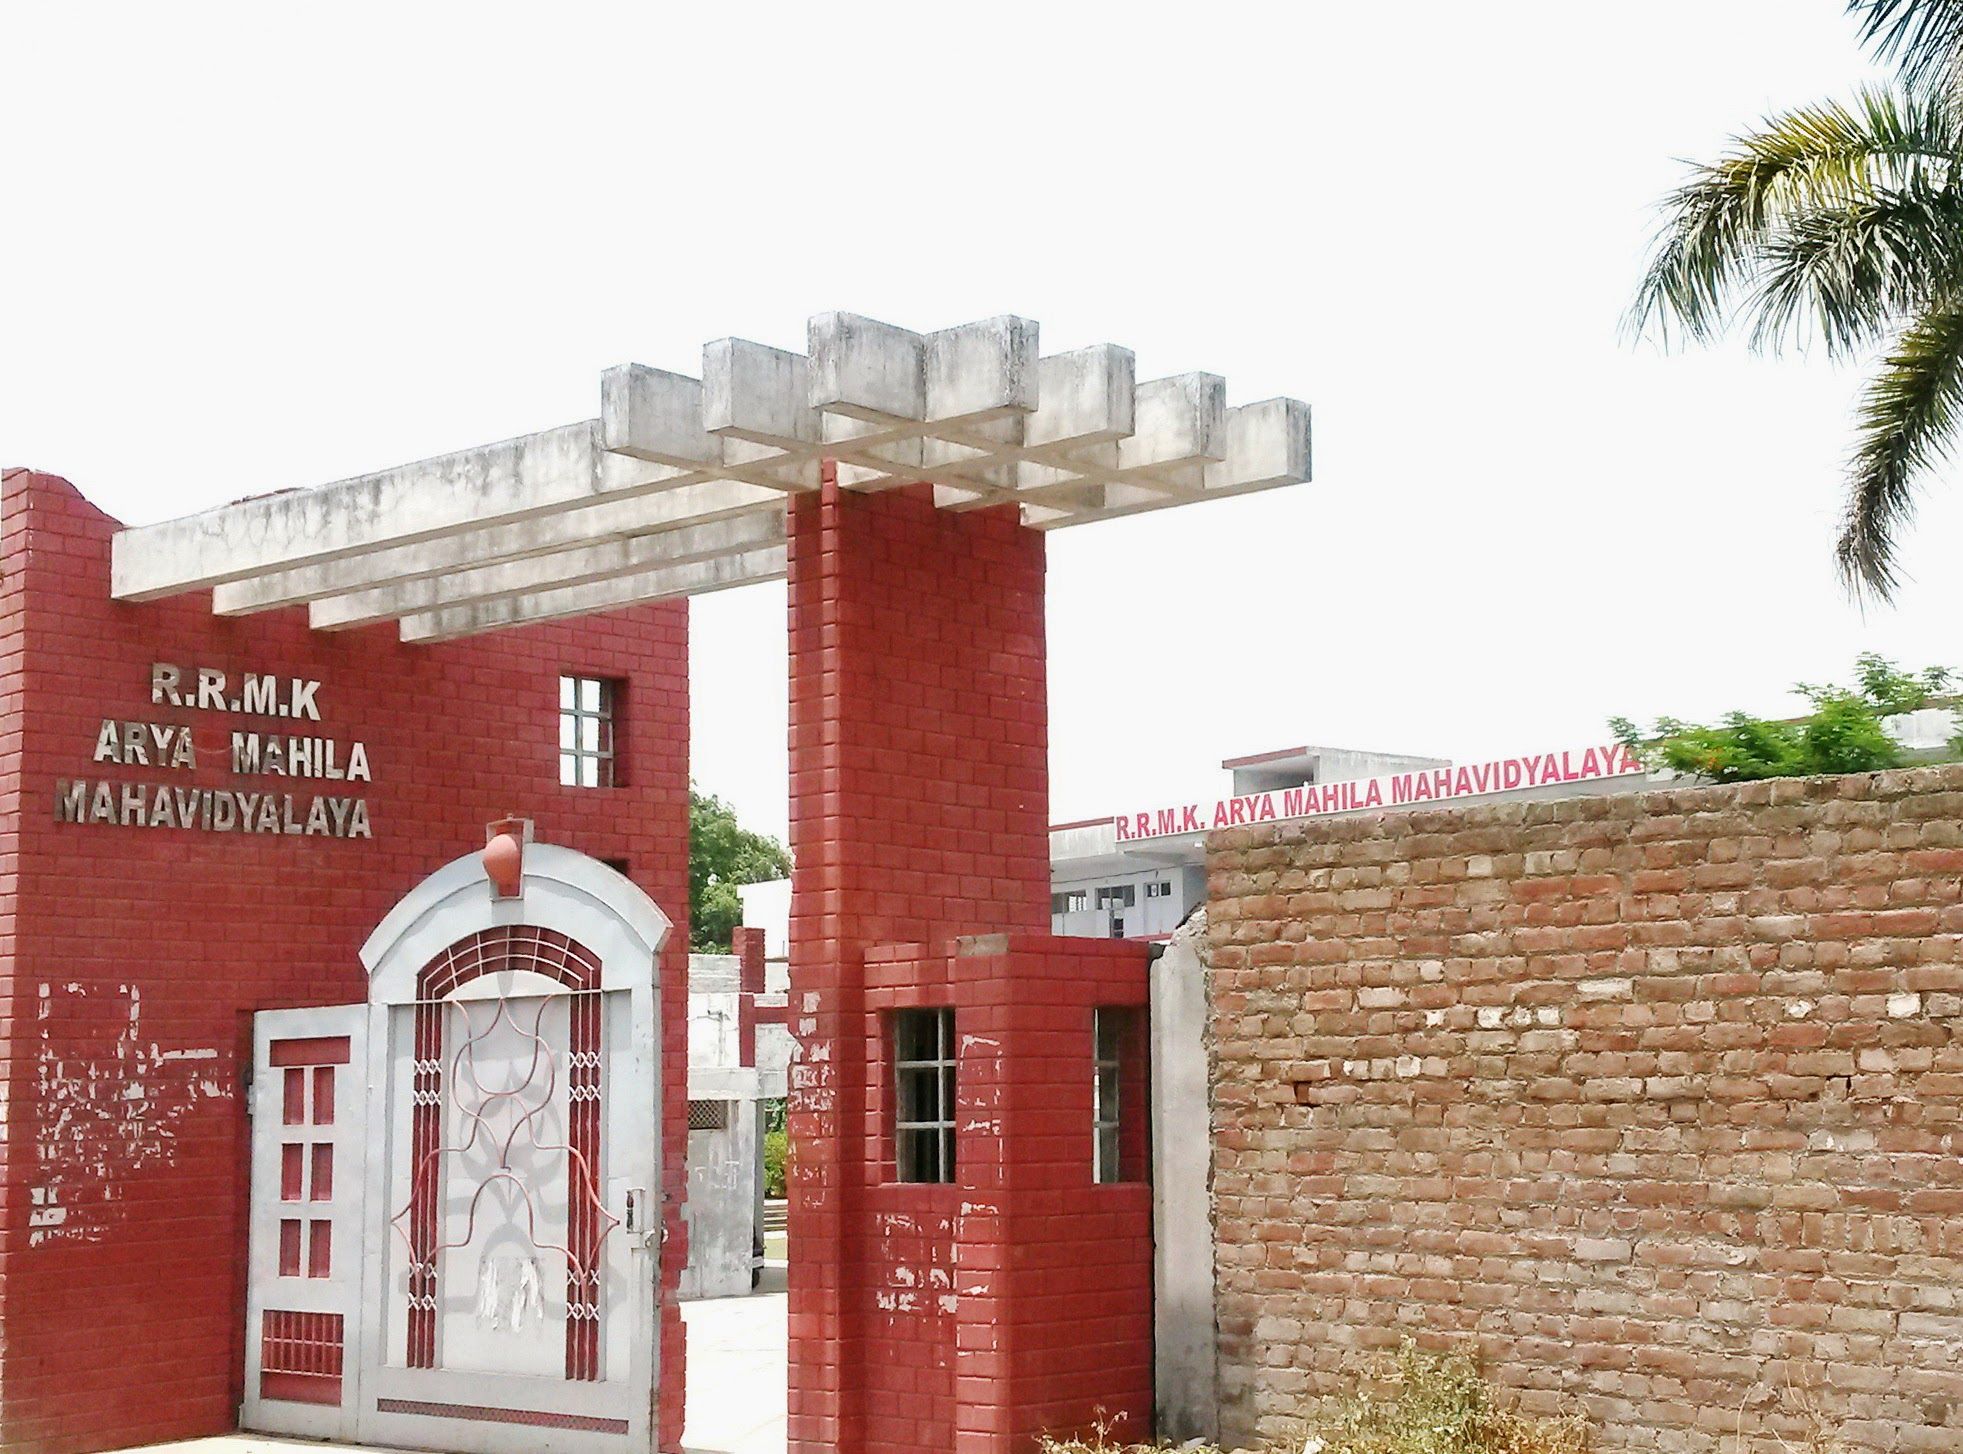 R.R.M.K Arya Mahila Mahavidyalaya Campus Building